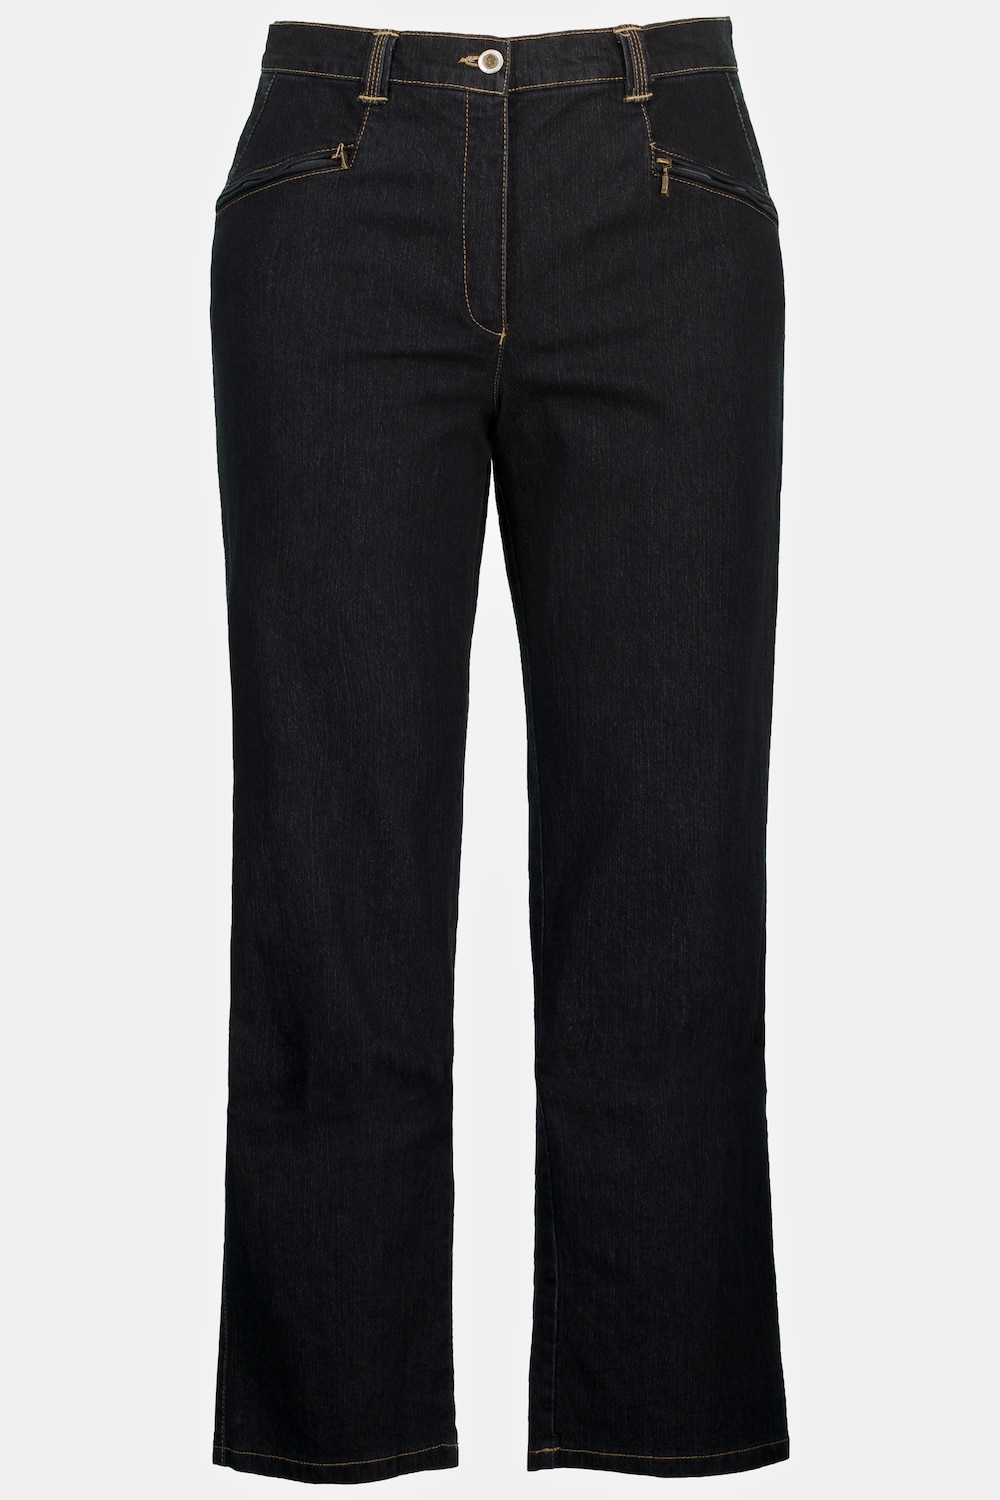 Grote Maten jeans Mony, Dames, zwart, Maat: 29, Katoen/Polyester, Ulla Popken